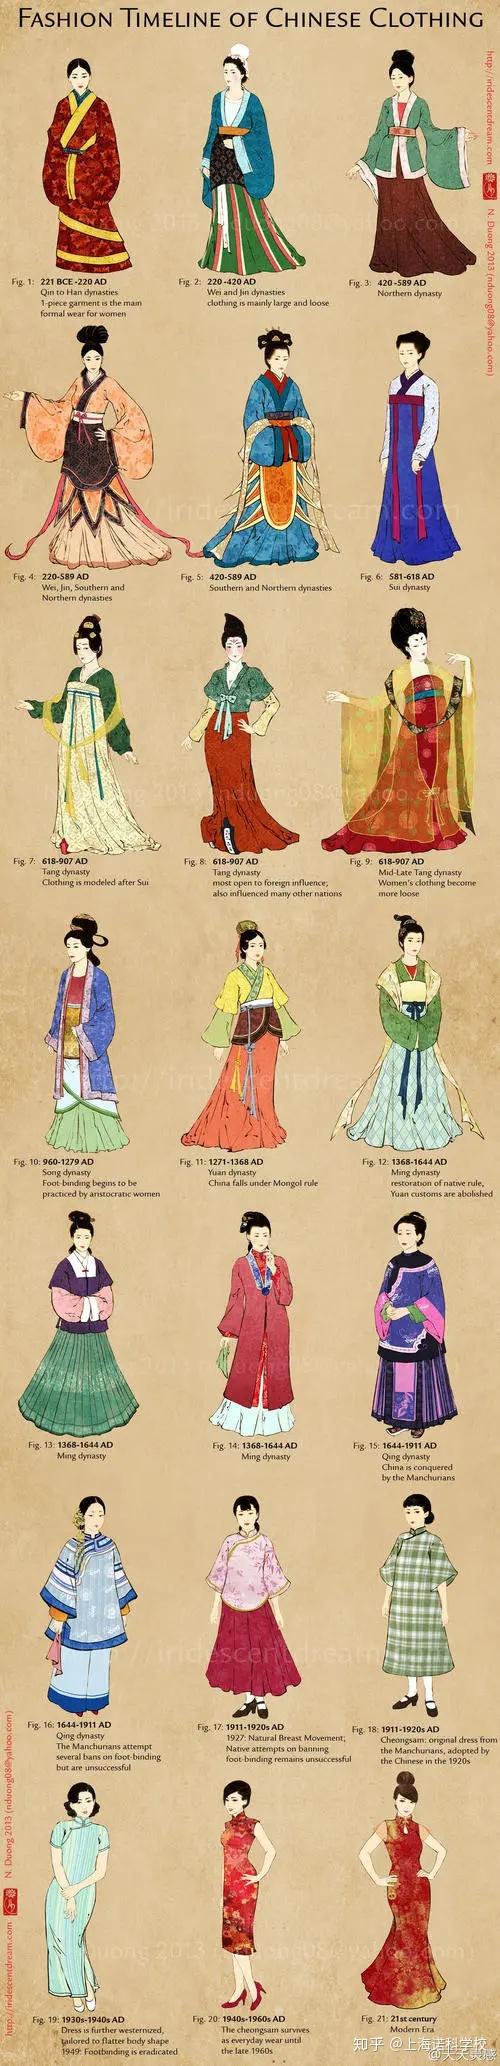 中国服饰文化,从原始社会,商周,春秋战国,到秦汉,魏晋南北朝,到隋唐